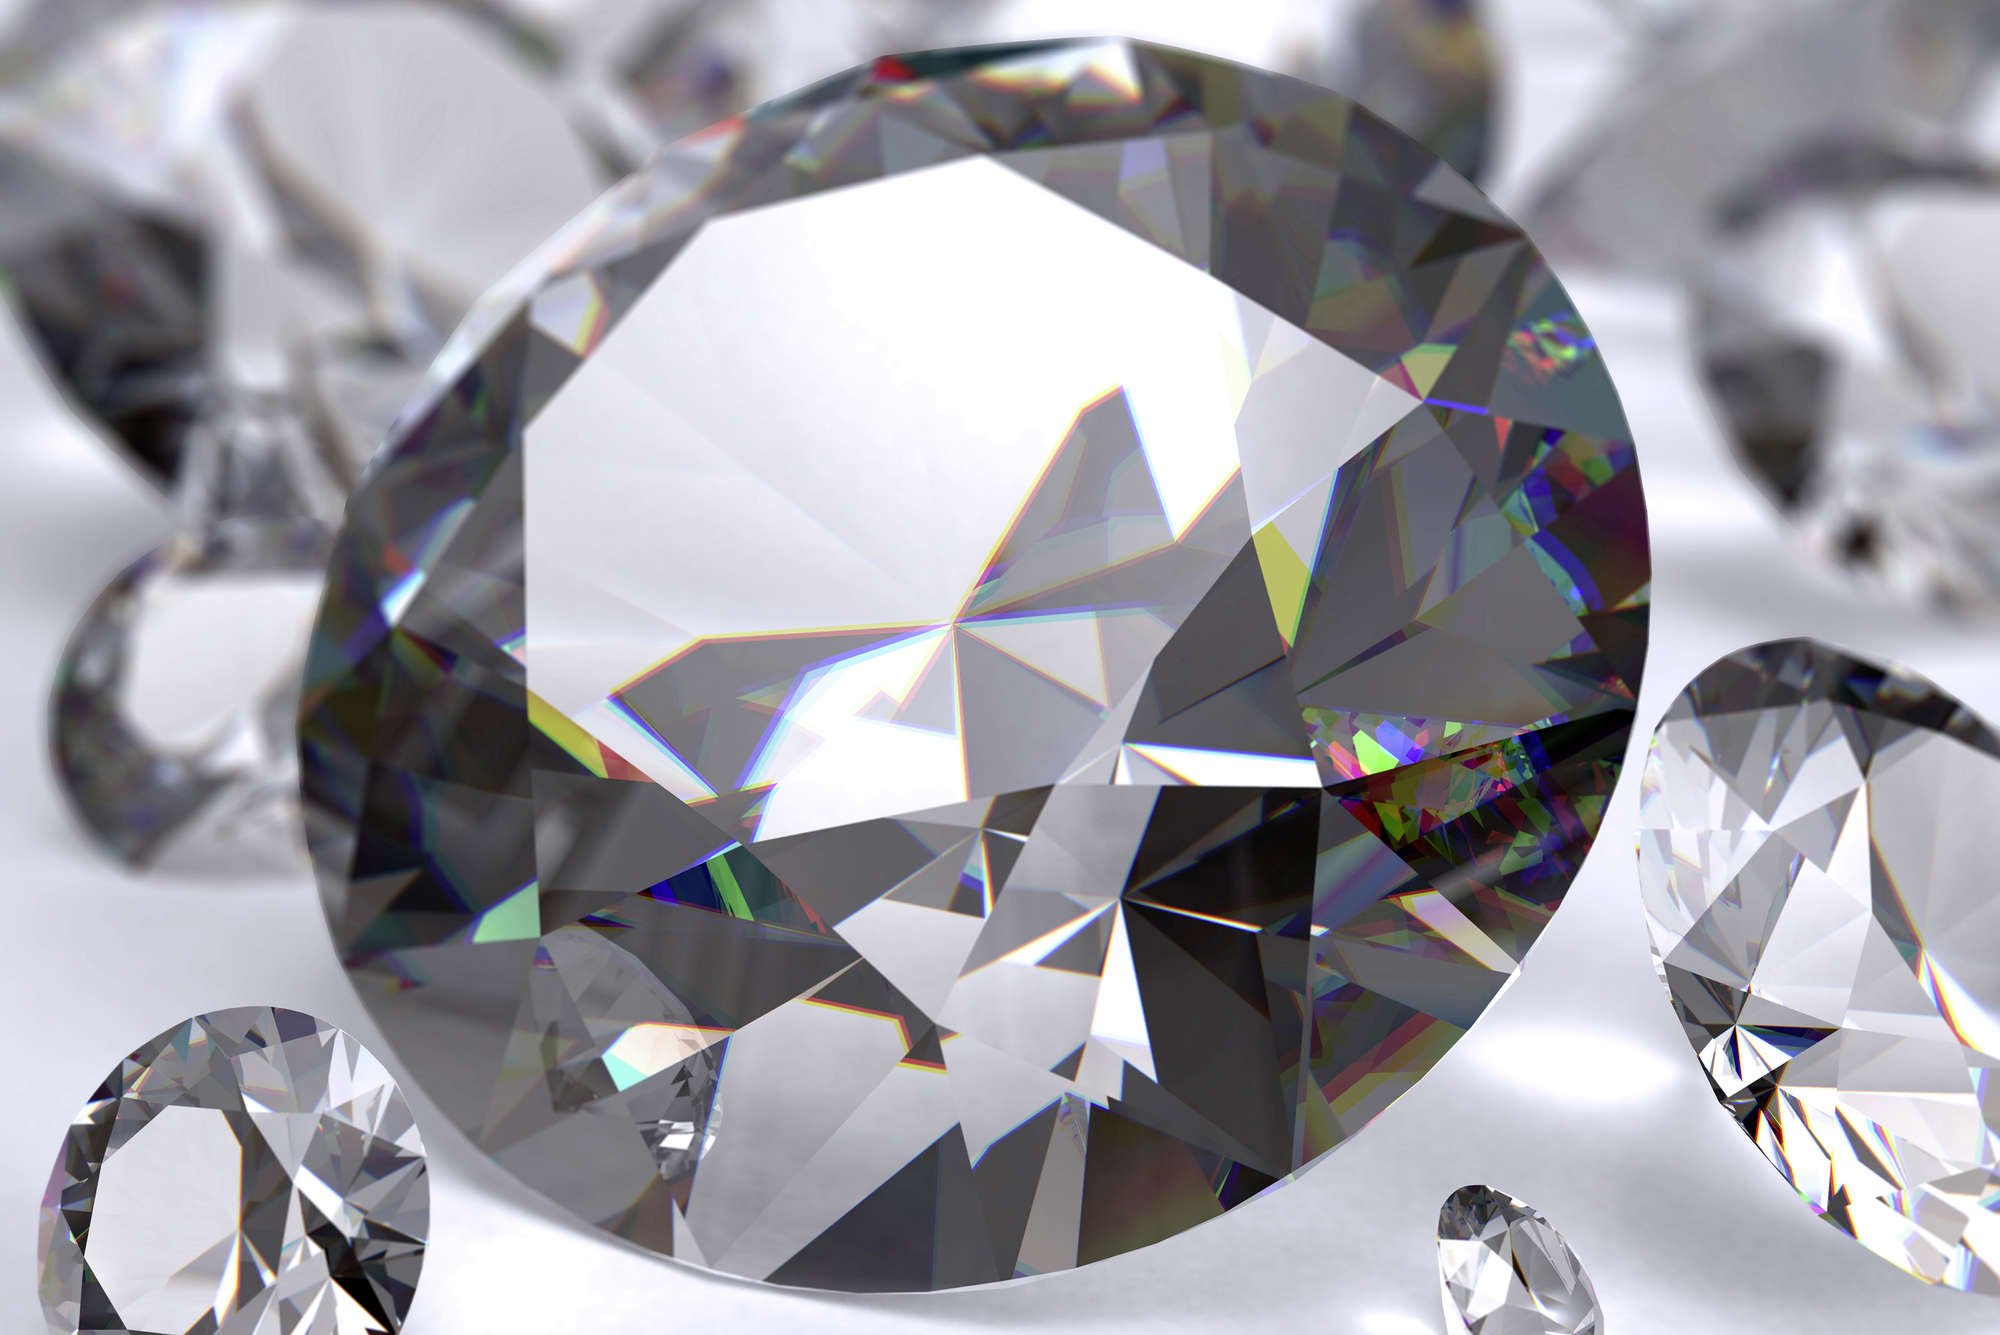             Fototapete großer Diamant – Strukturiertes Vlies
        